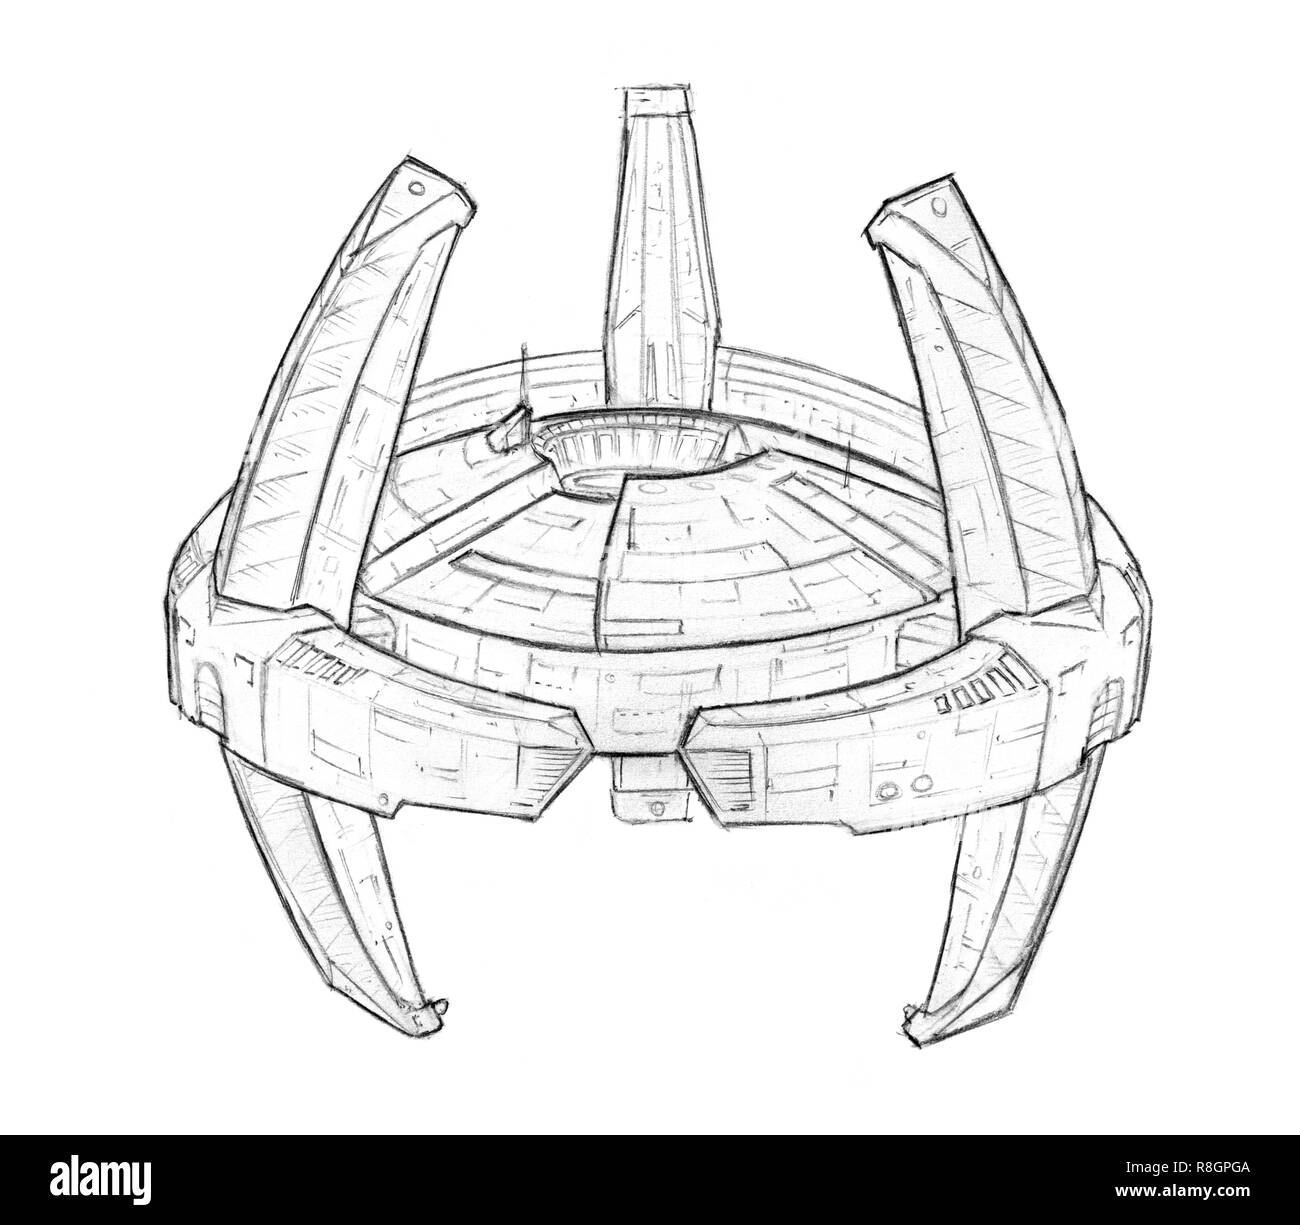 Matita Concept Art disegno di avveniristici Spacestation o stazione di spazio Foto Stock